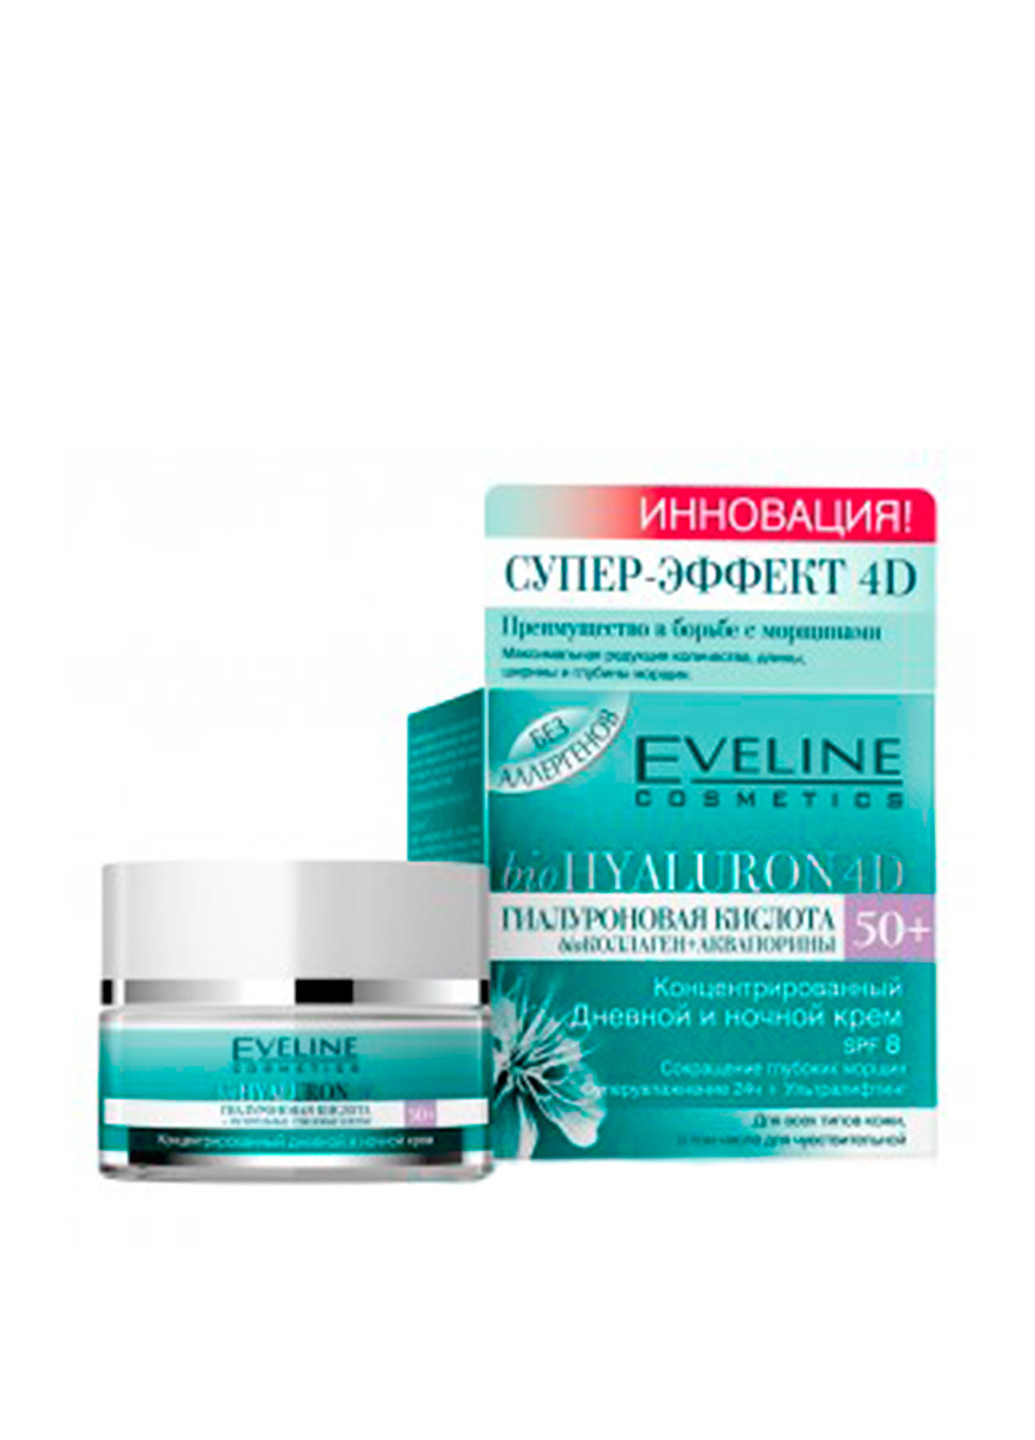 Крем для обличчя концентрований денний і нічний BioHyaluron 4D, 50 мл Eveline Cosmetics (160879843)